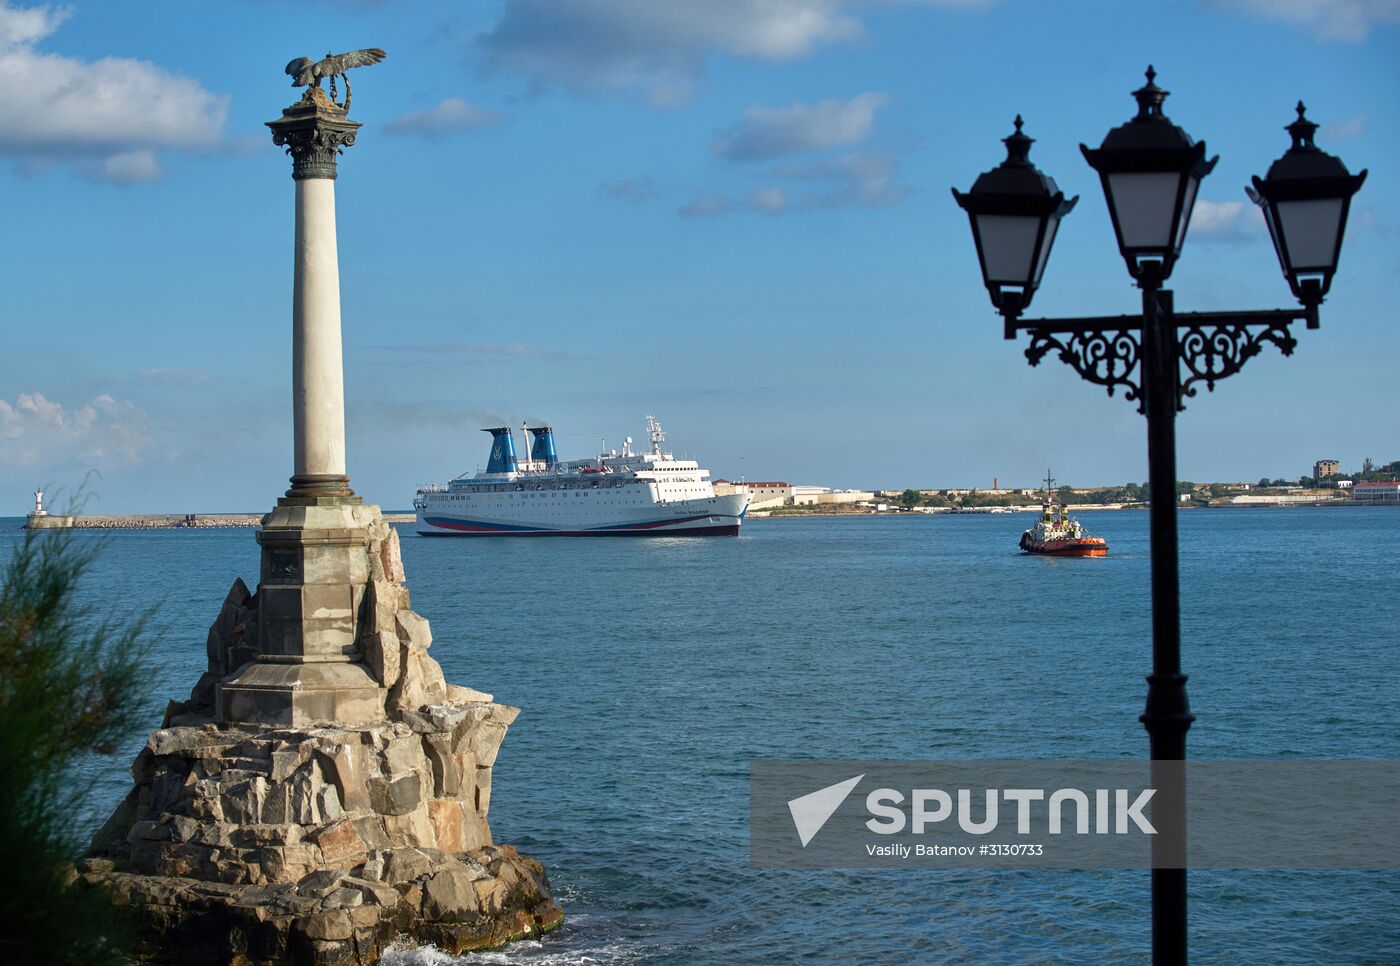 Grand Duke Wladimir cruise liner arrives to Sevastopol